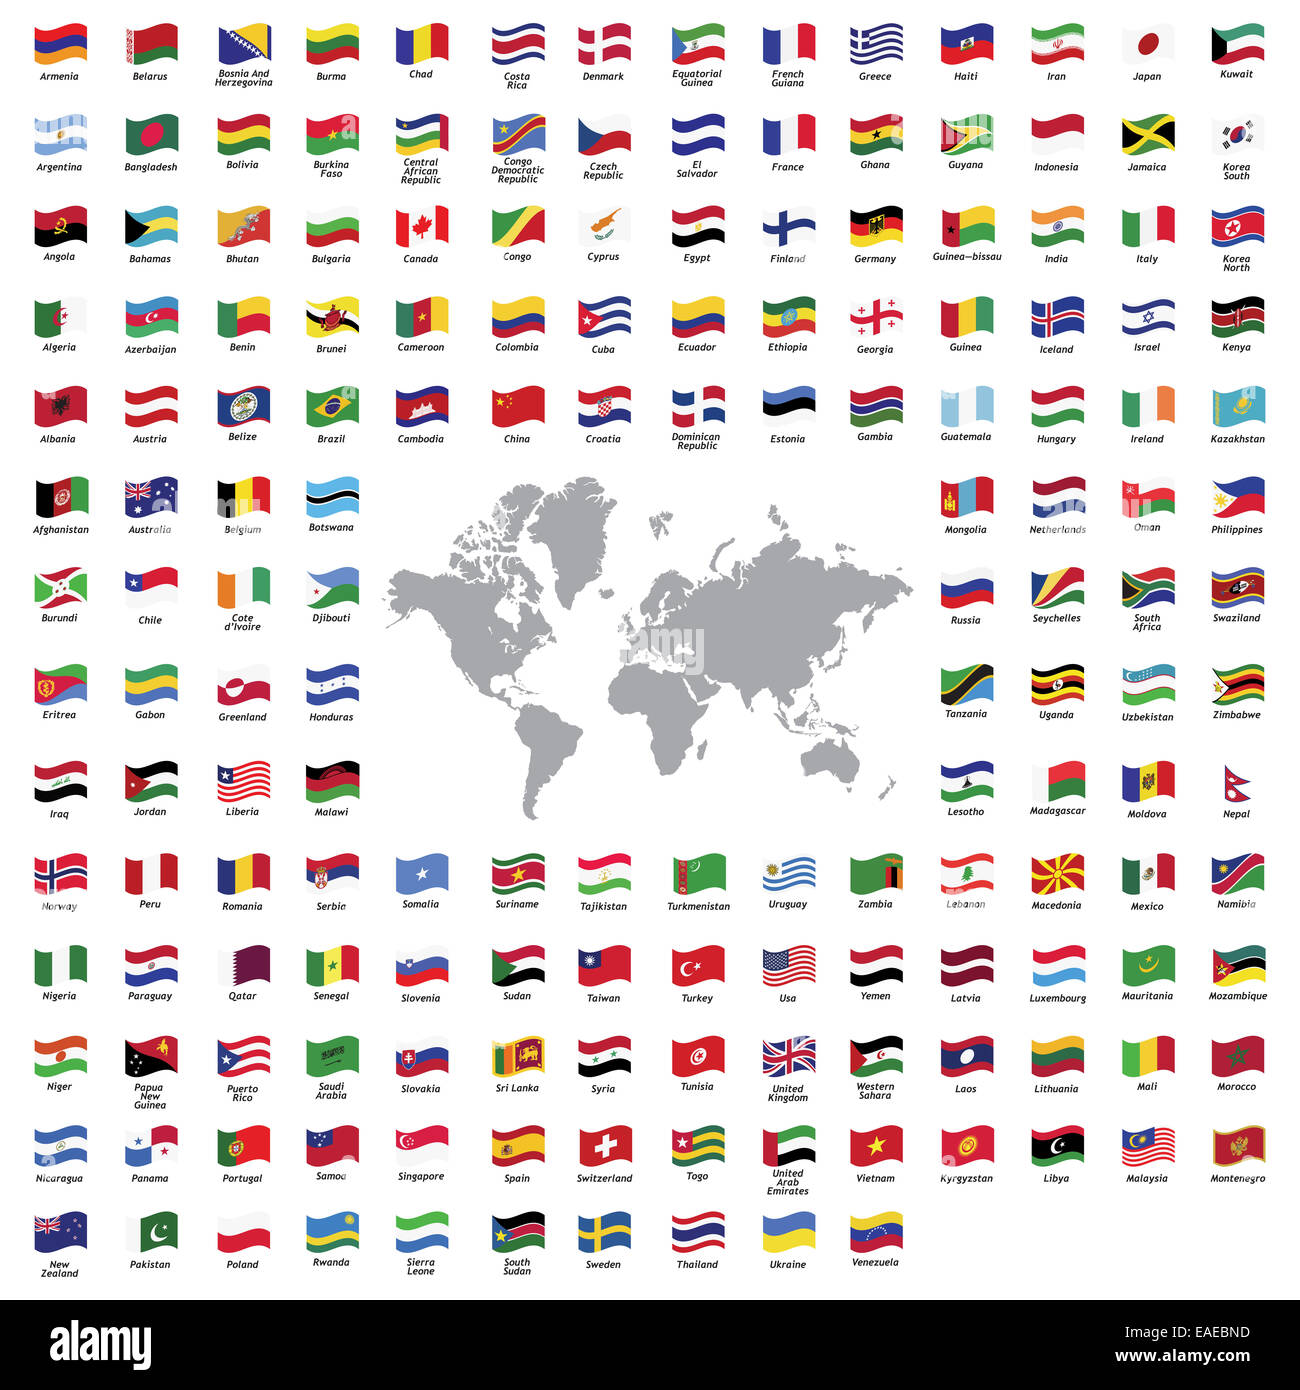 alle offiziellen Länderflaggen und Weltkarte Stockfotografie - Alamy